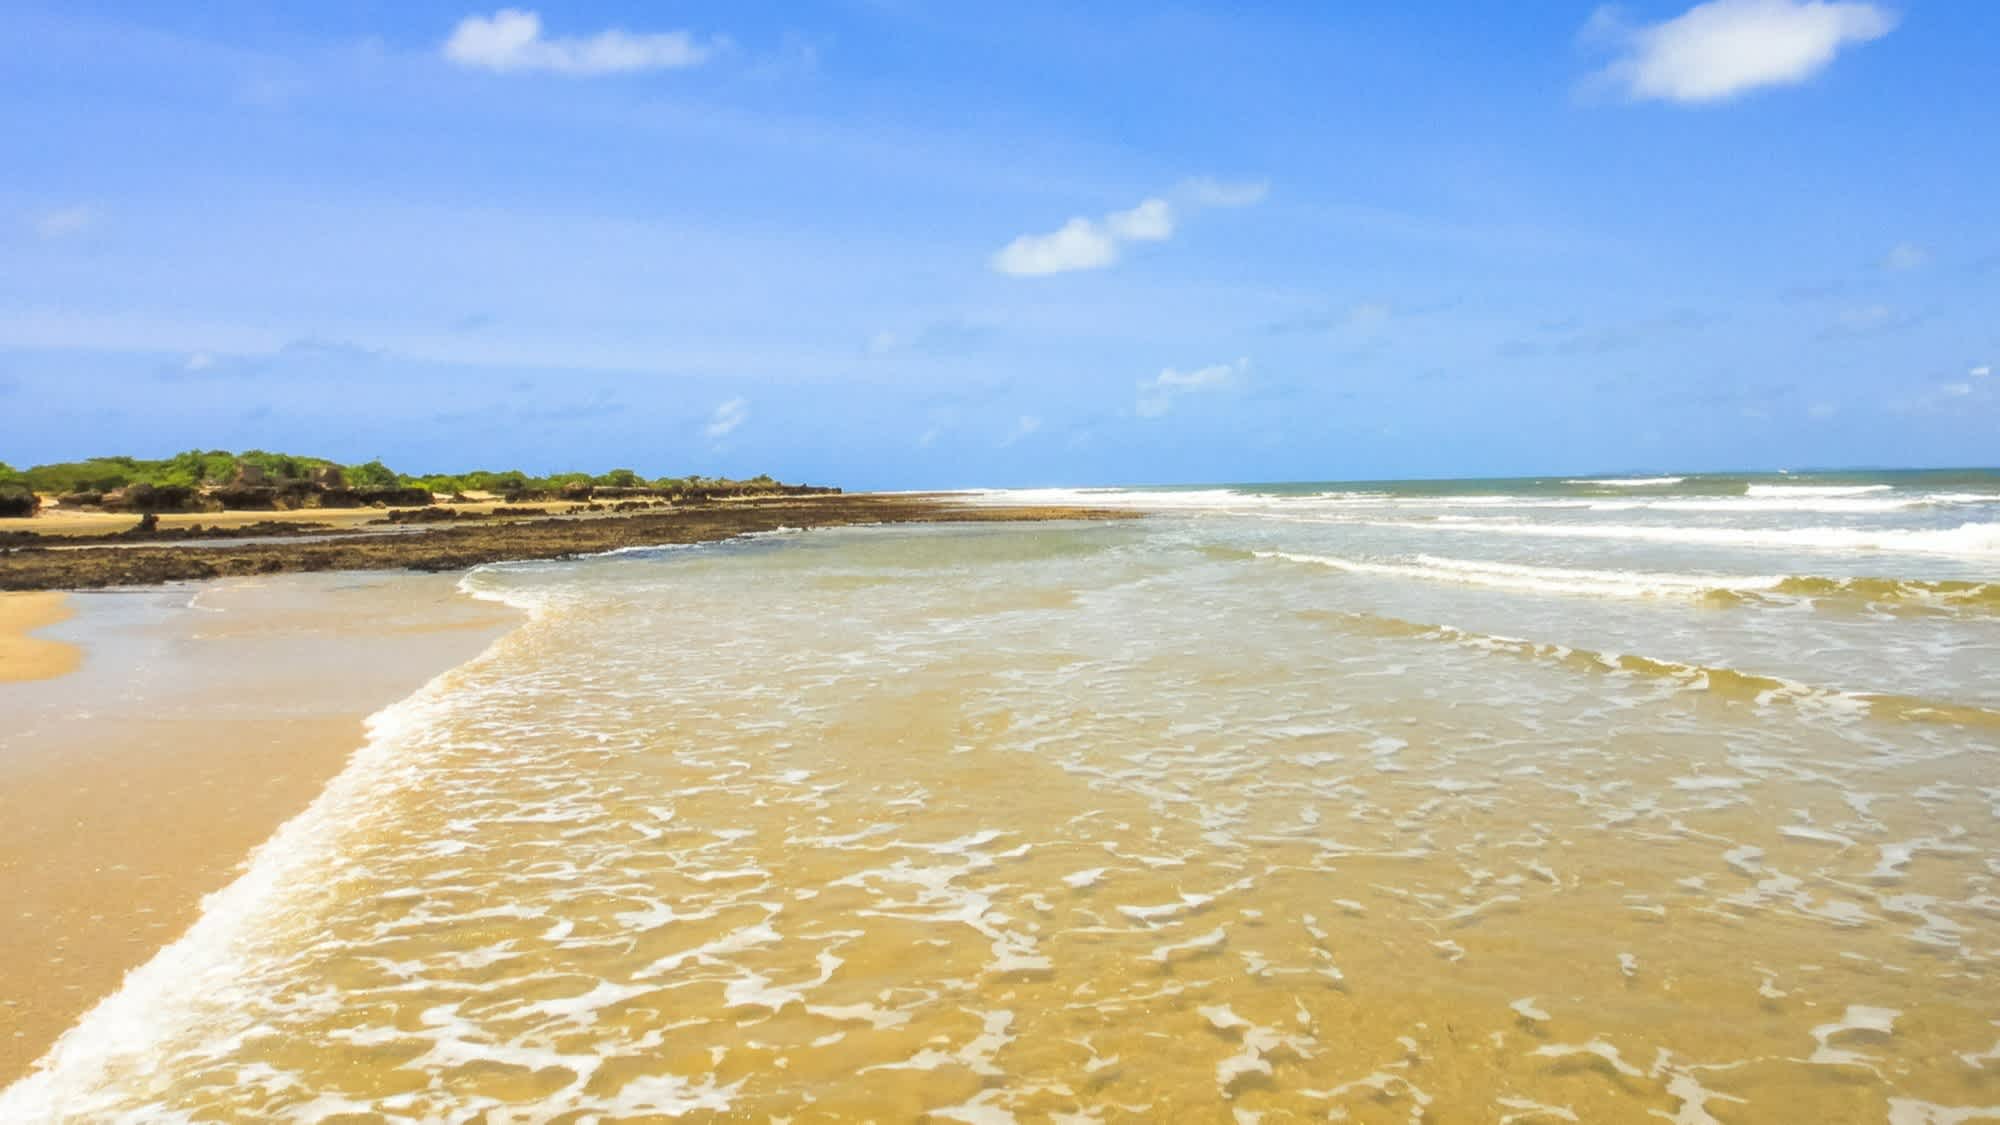 Blick auf den goldenen Sandstrand Manda Beach in Kenia mit Wellen und natürlichem Ambiente.